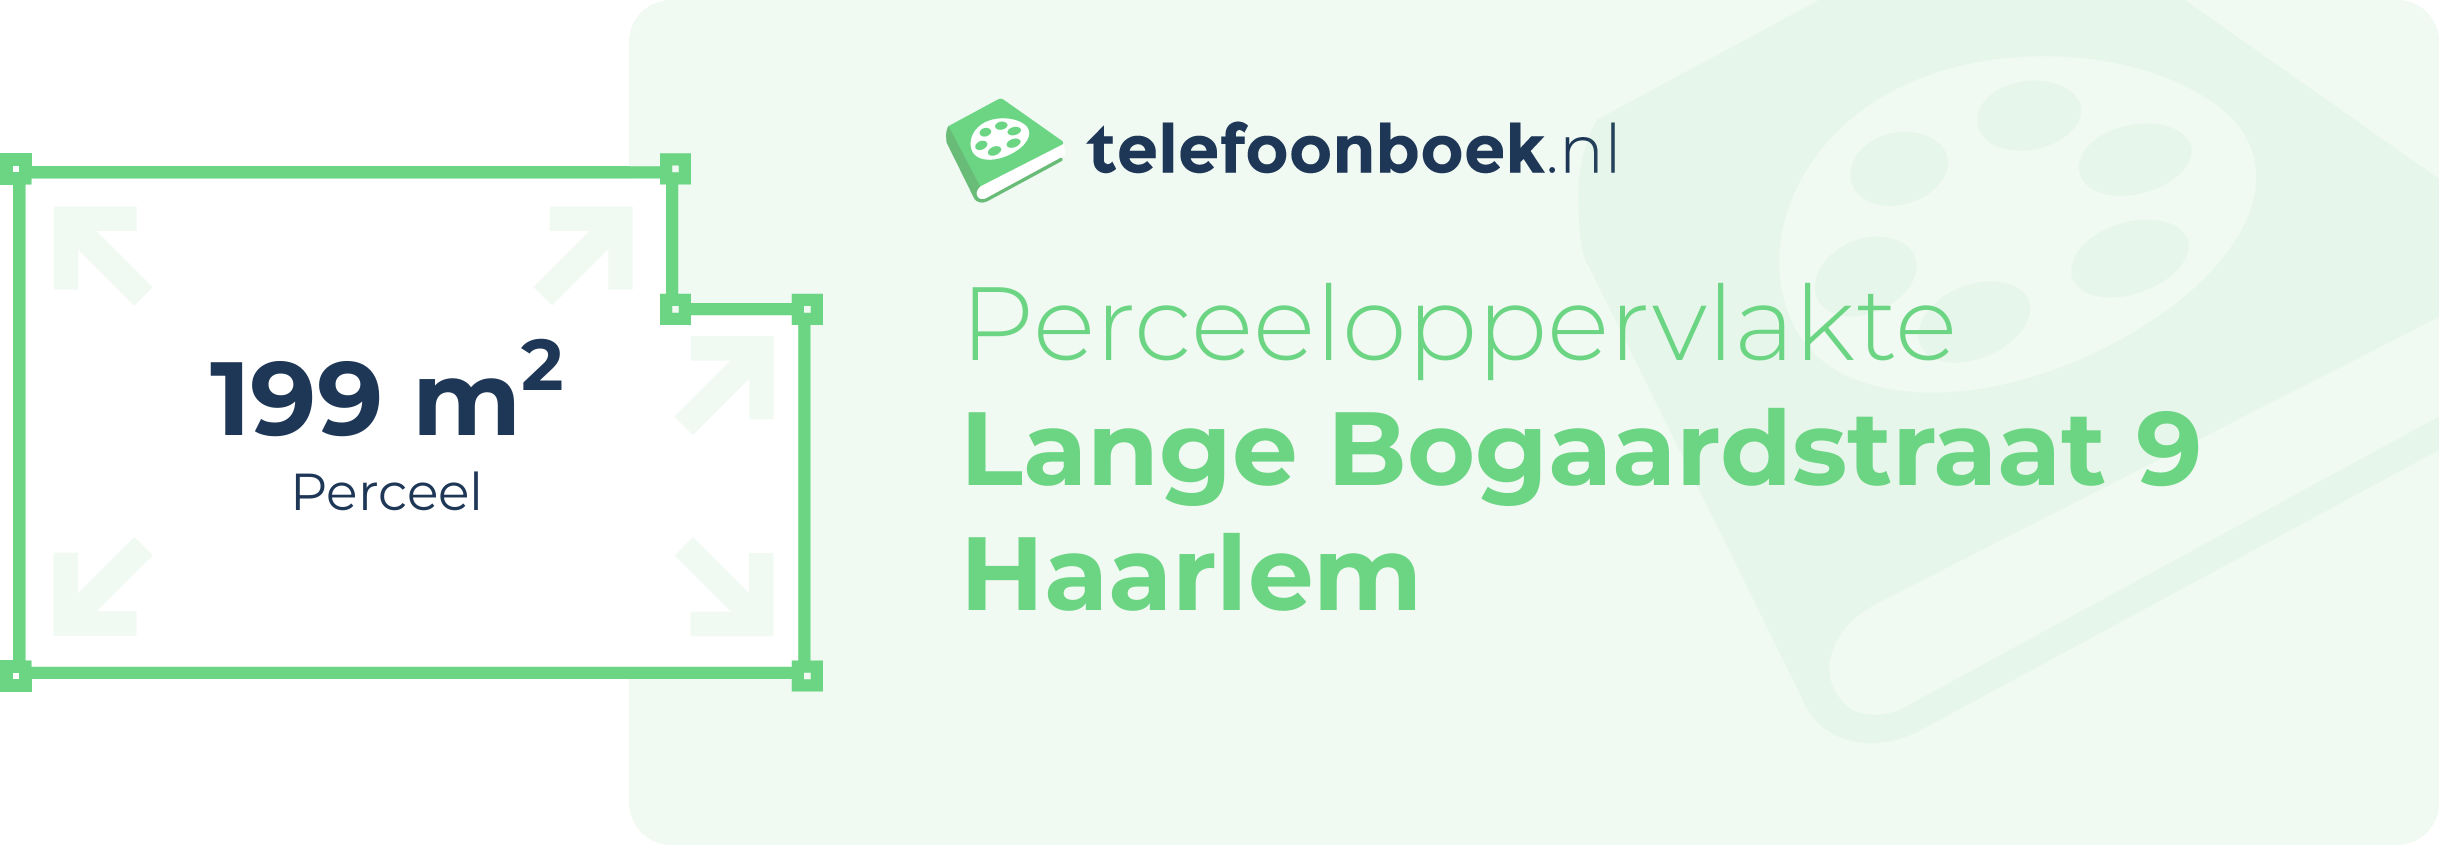 Perceeloppervlakte Lange Bogaardstraat 9 Haarlem